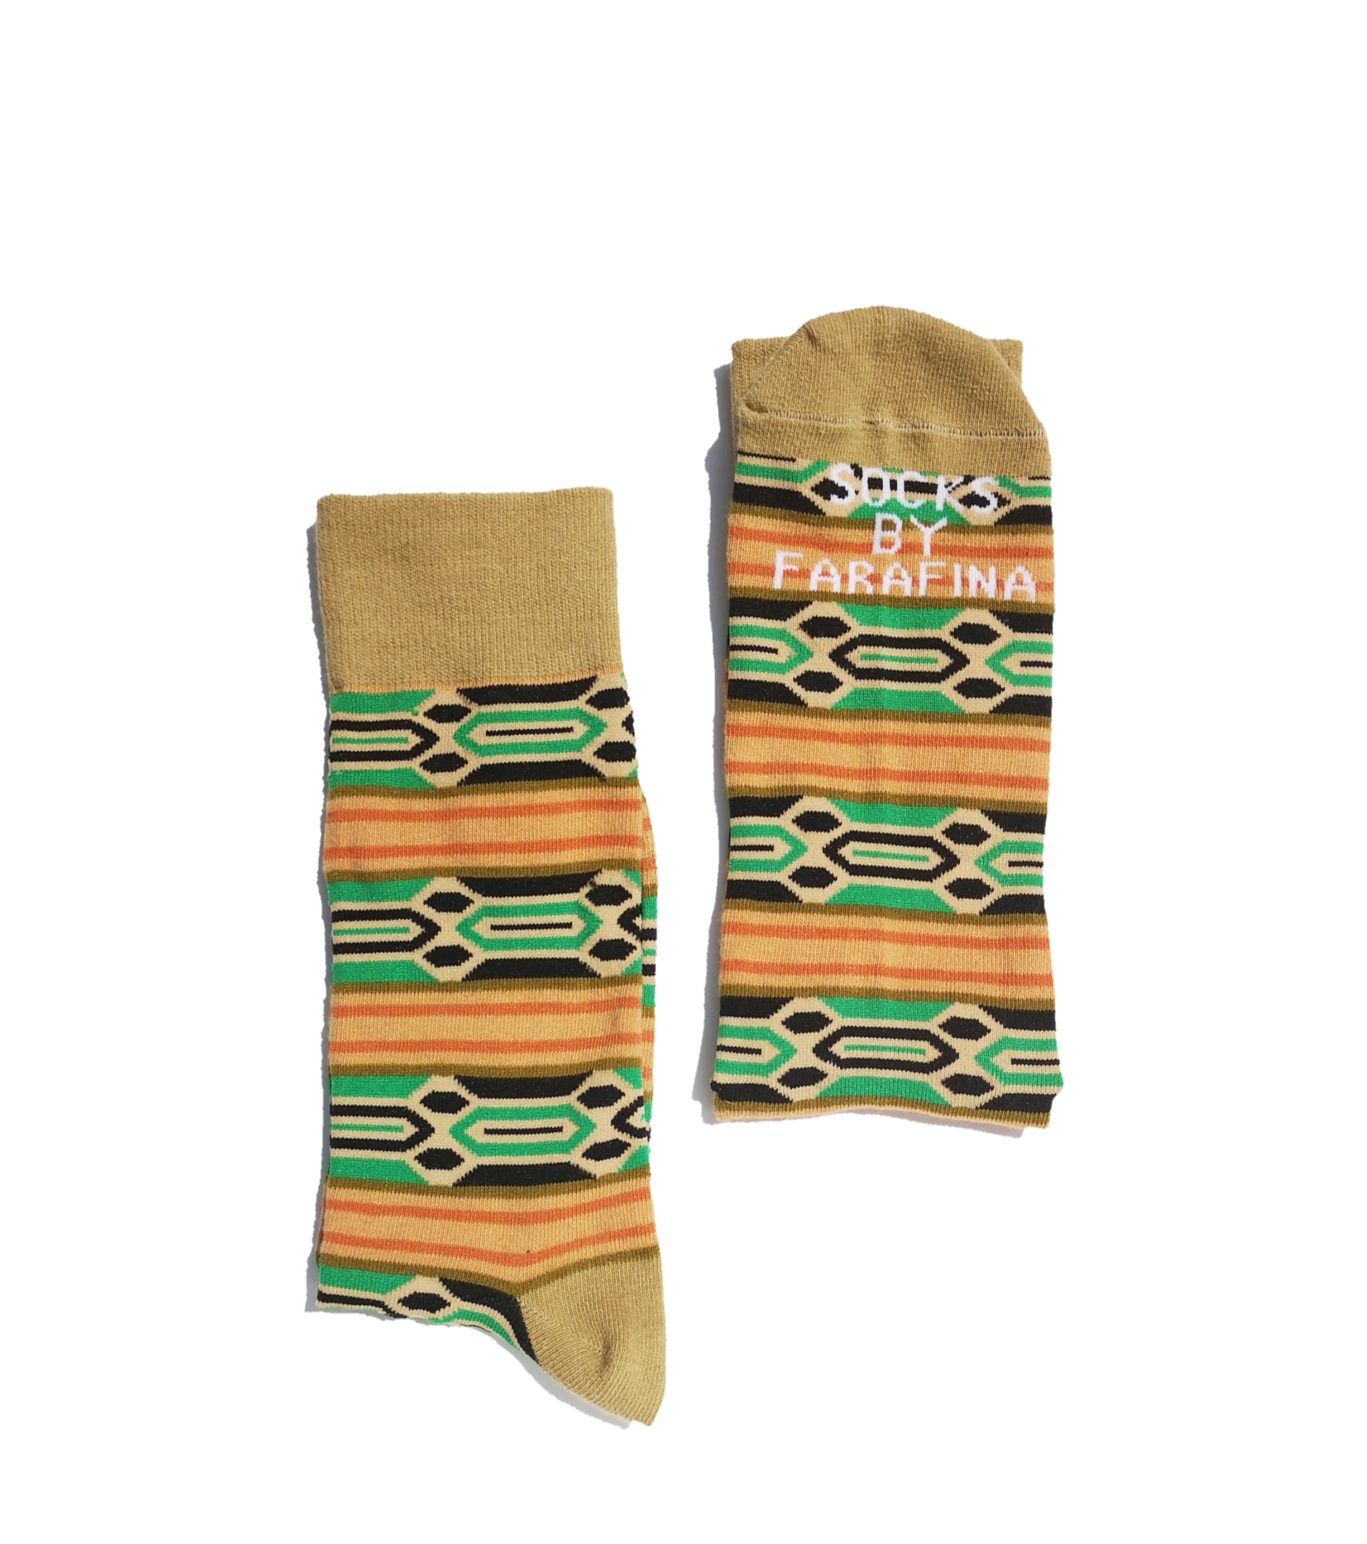 Comfysocks - Funky tribal pattern unisex socks for men and women